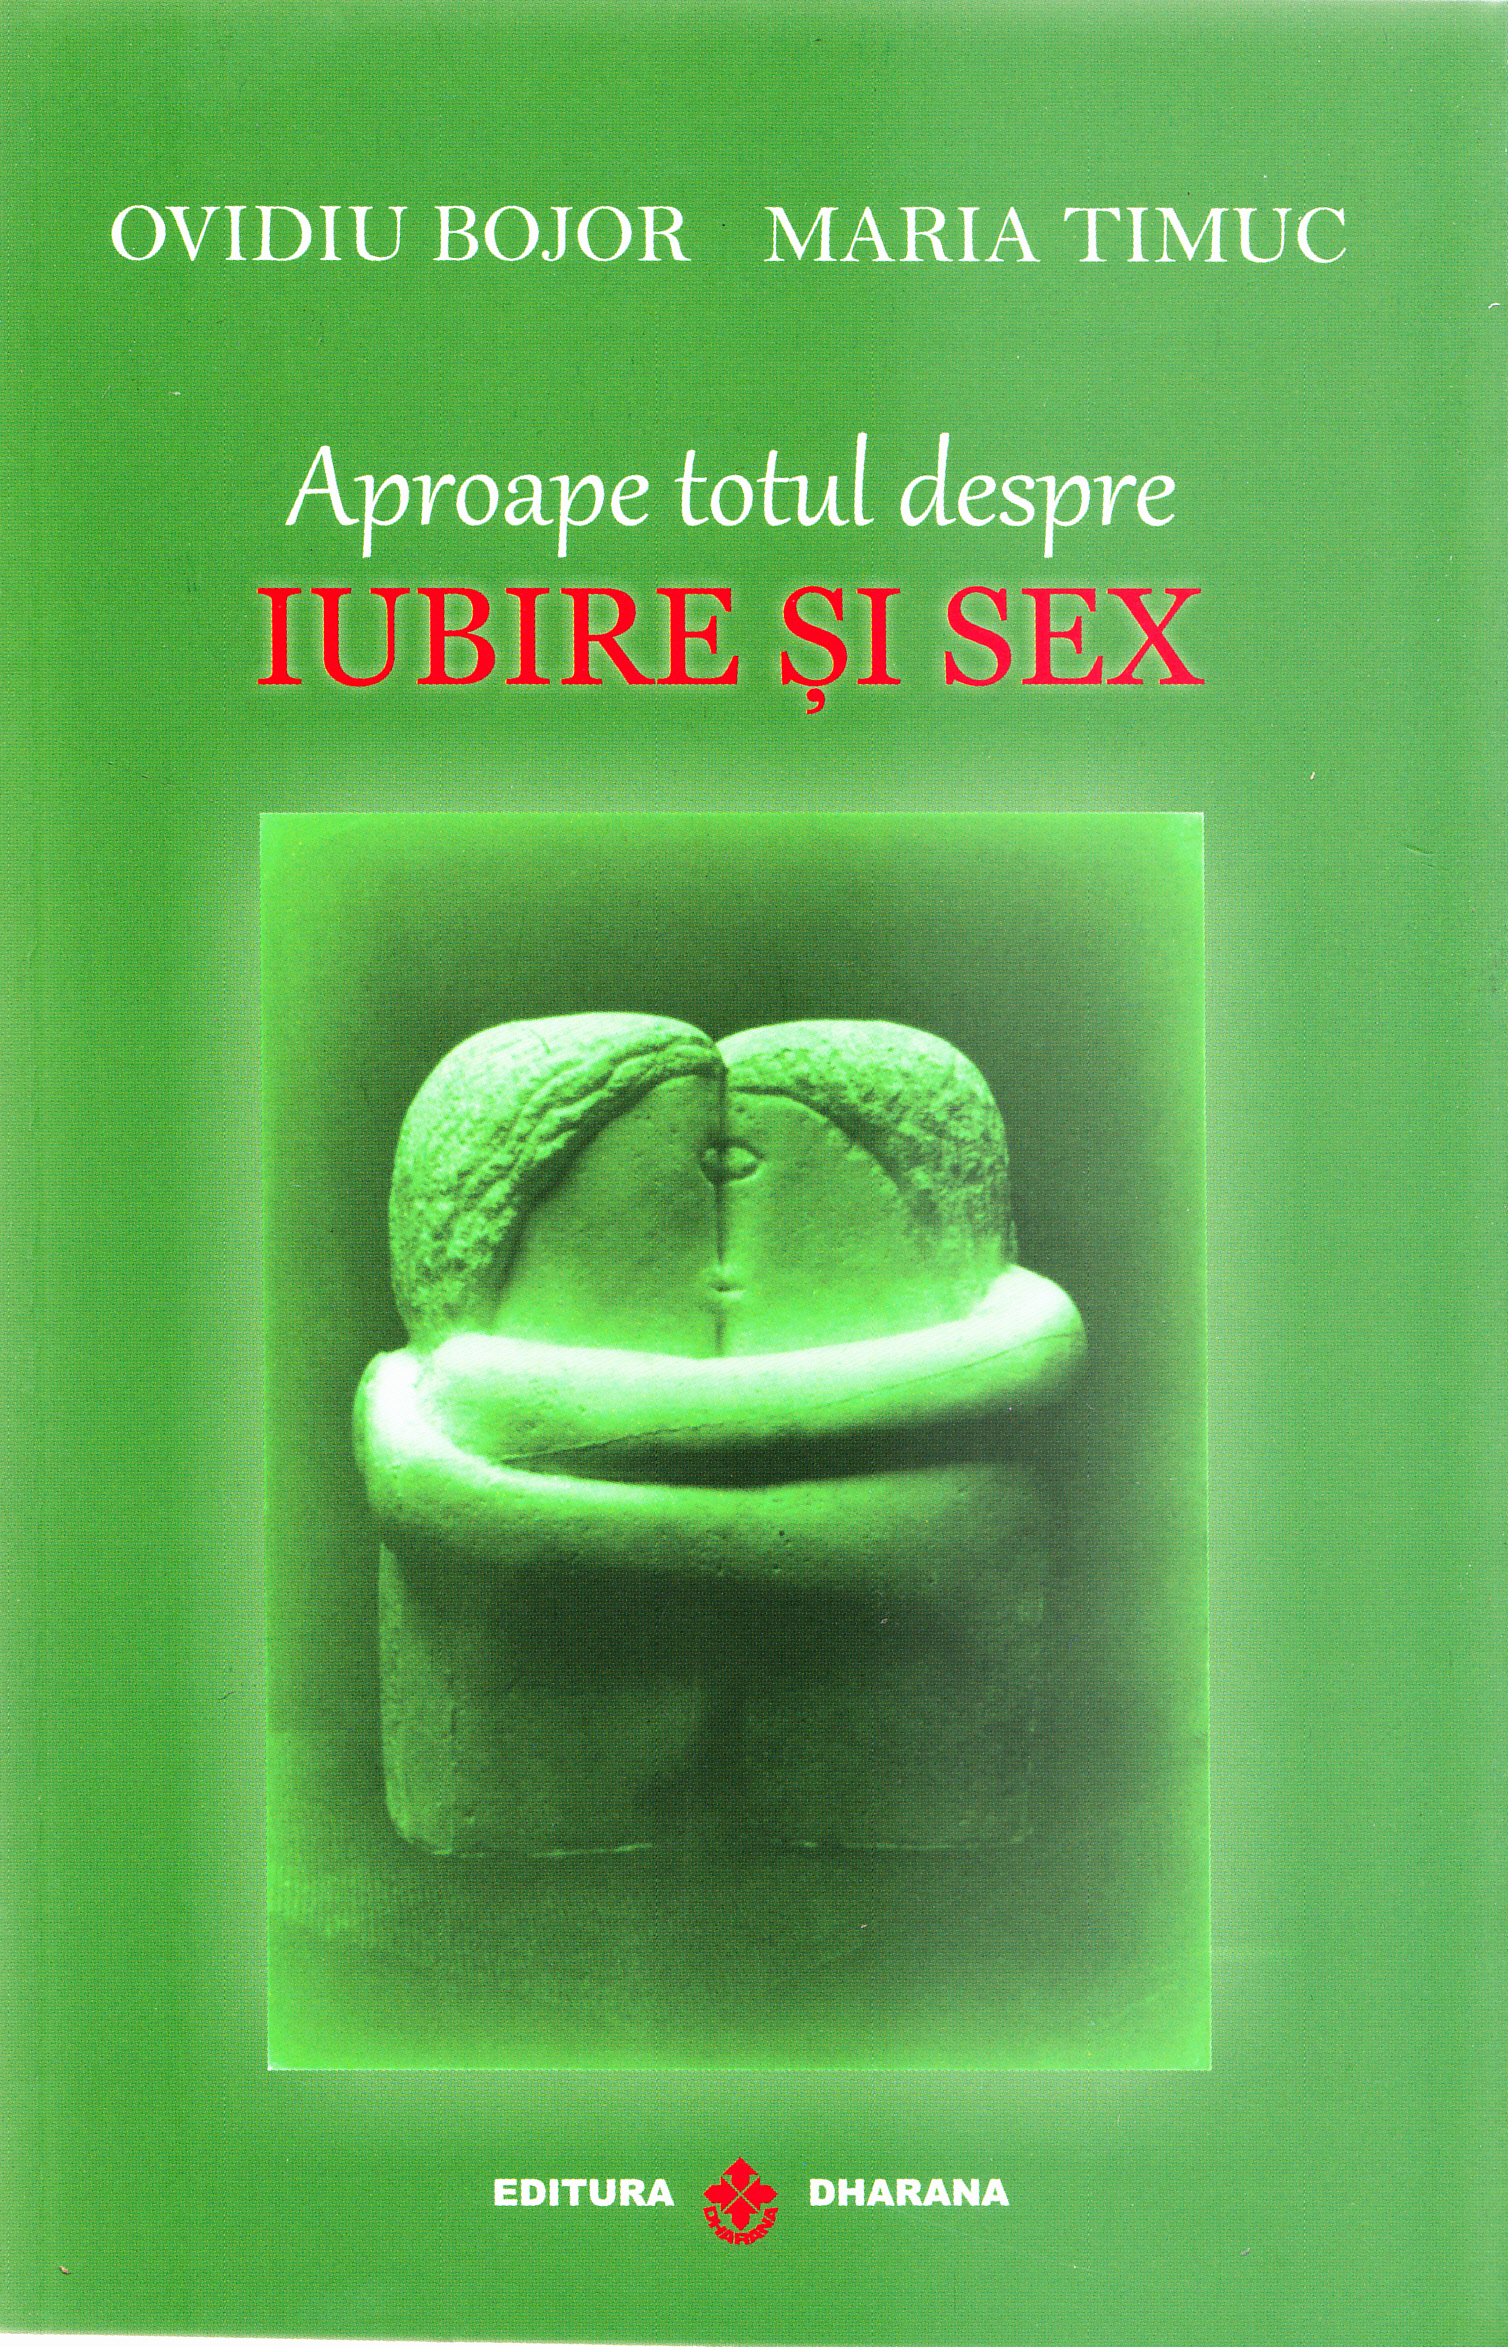 Aproape totul despre iubire si sex | Ovidiu Bojor, Maria Timuc De La Carturesti Carti Dezvoltare Personala 2023-10-02